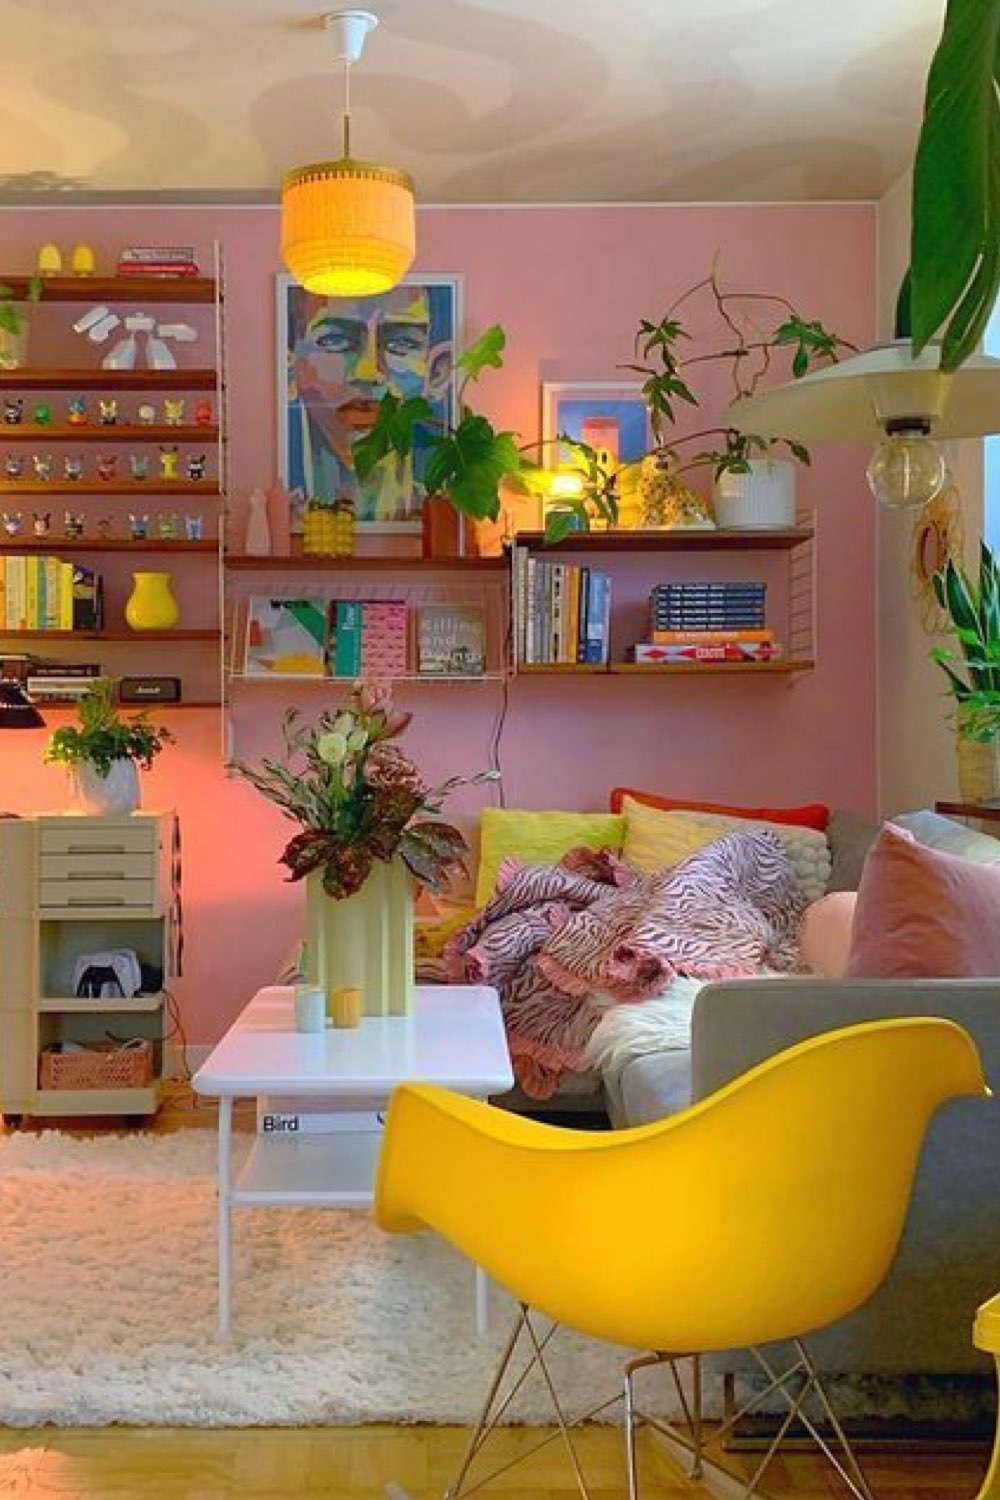 style eclectique ou decor vintage moderne salon séjour mur rose fauteuil Eames jaune plantes vertes canapé bleu gris